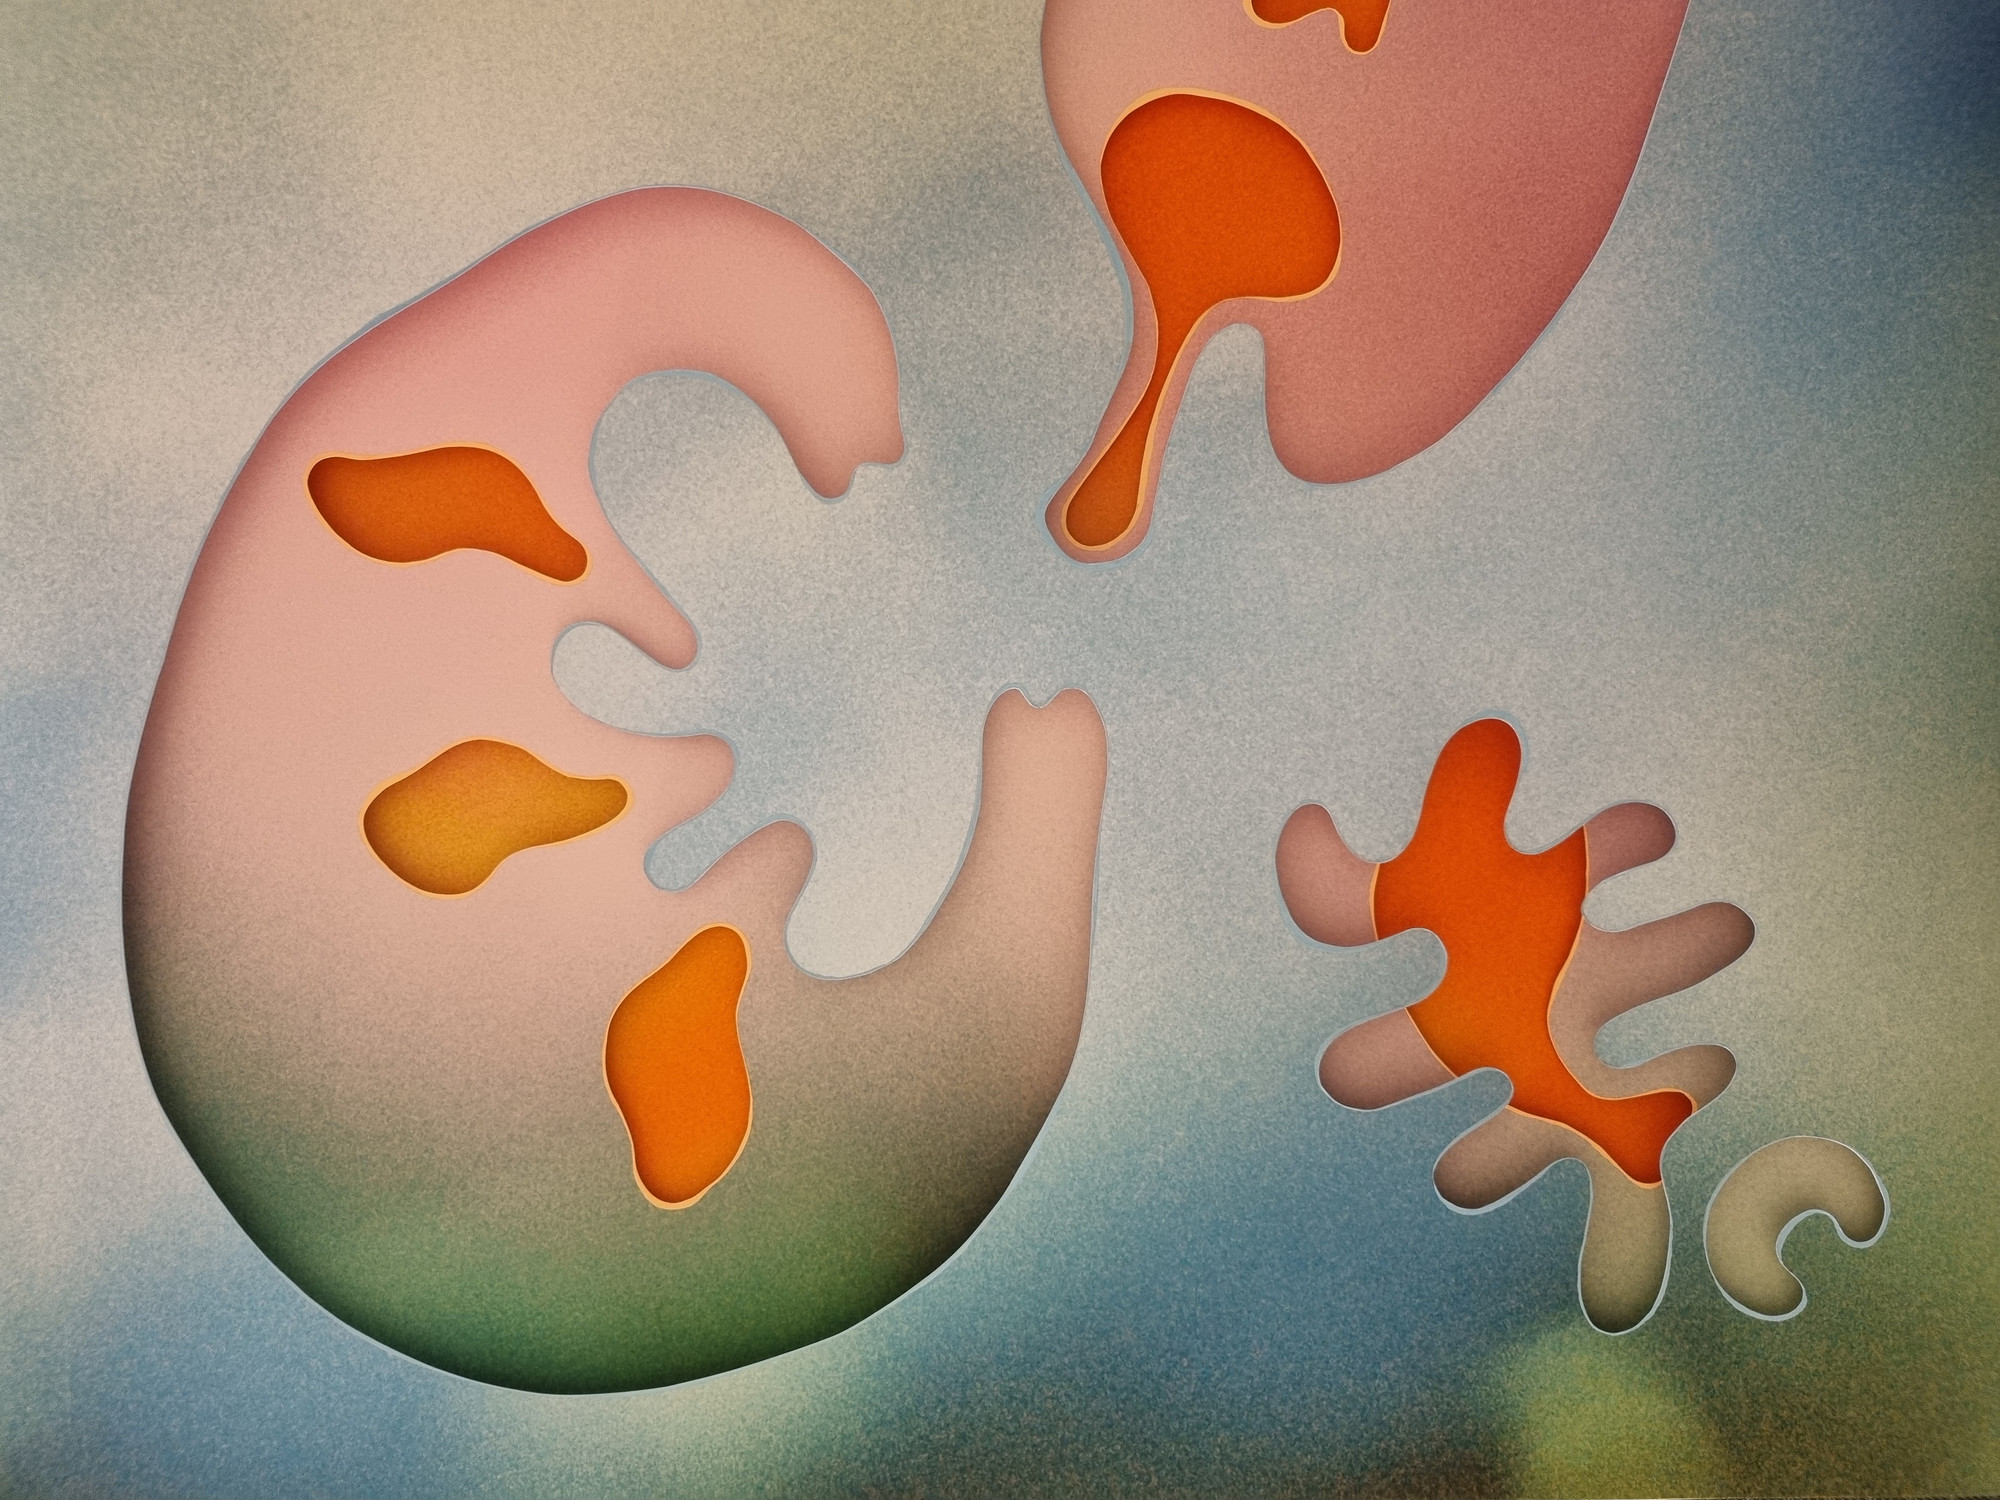 Detalj fra arbeid av Sofie Brønner med abstrakte former i rosa, grønn og oransje på en blågrønn bakgrund